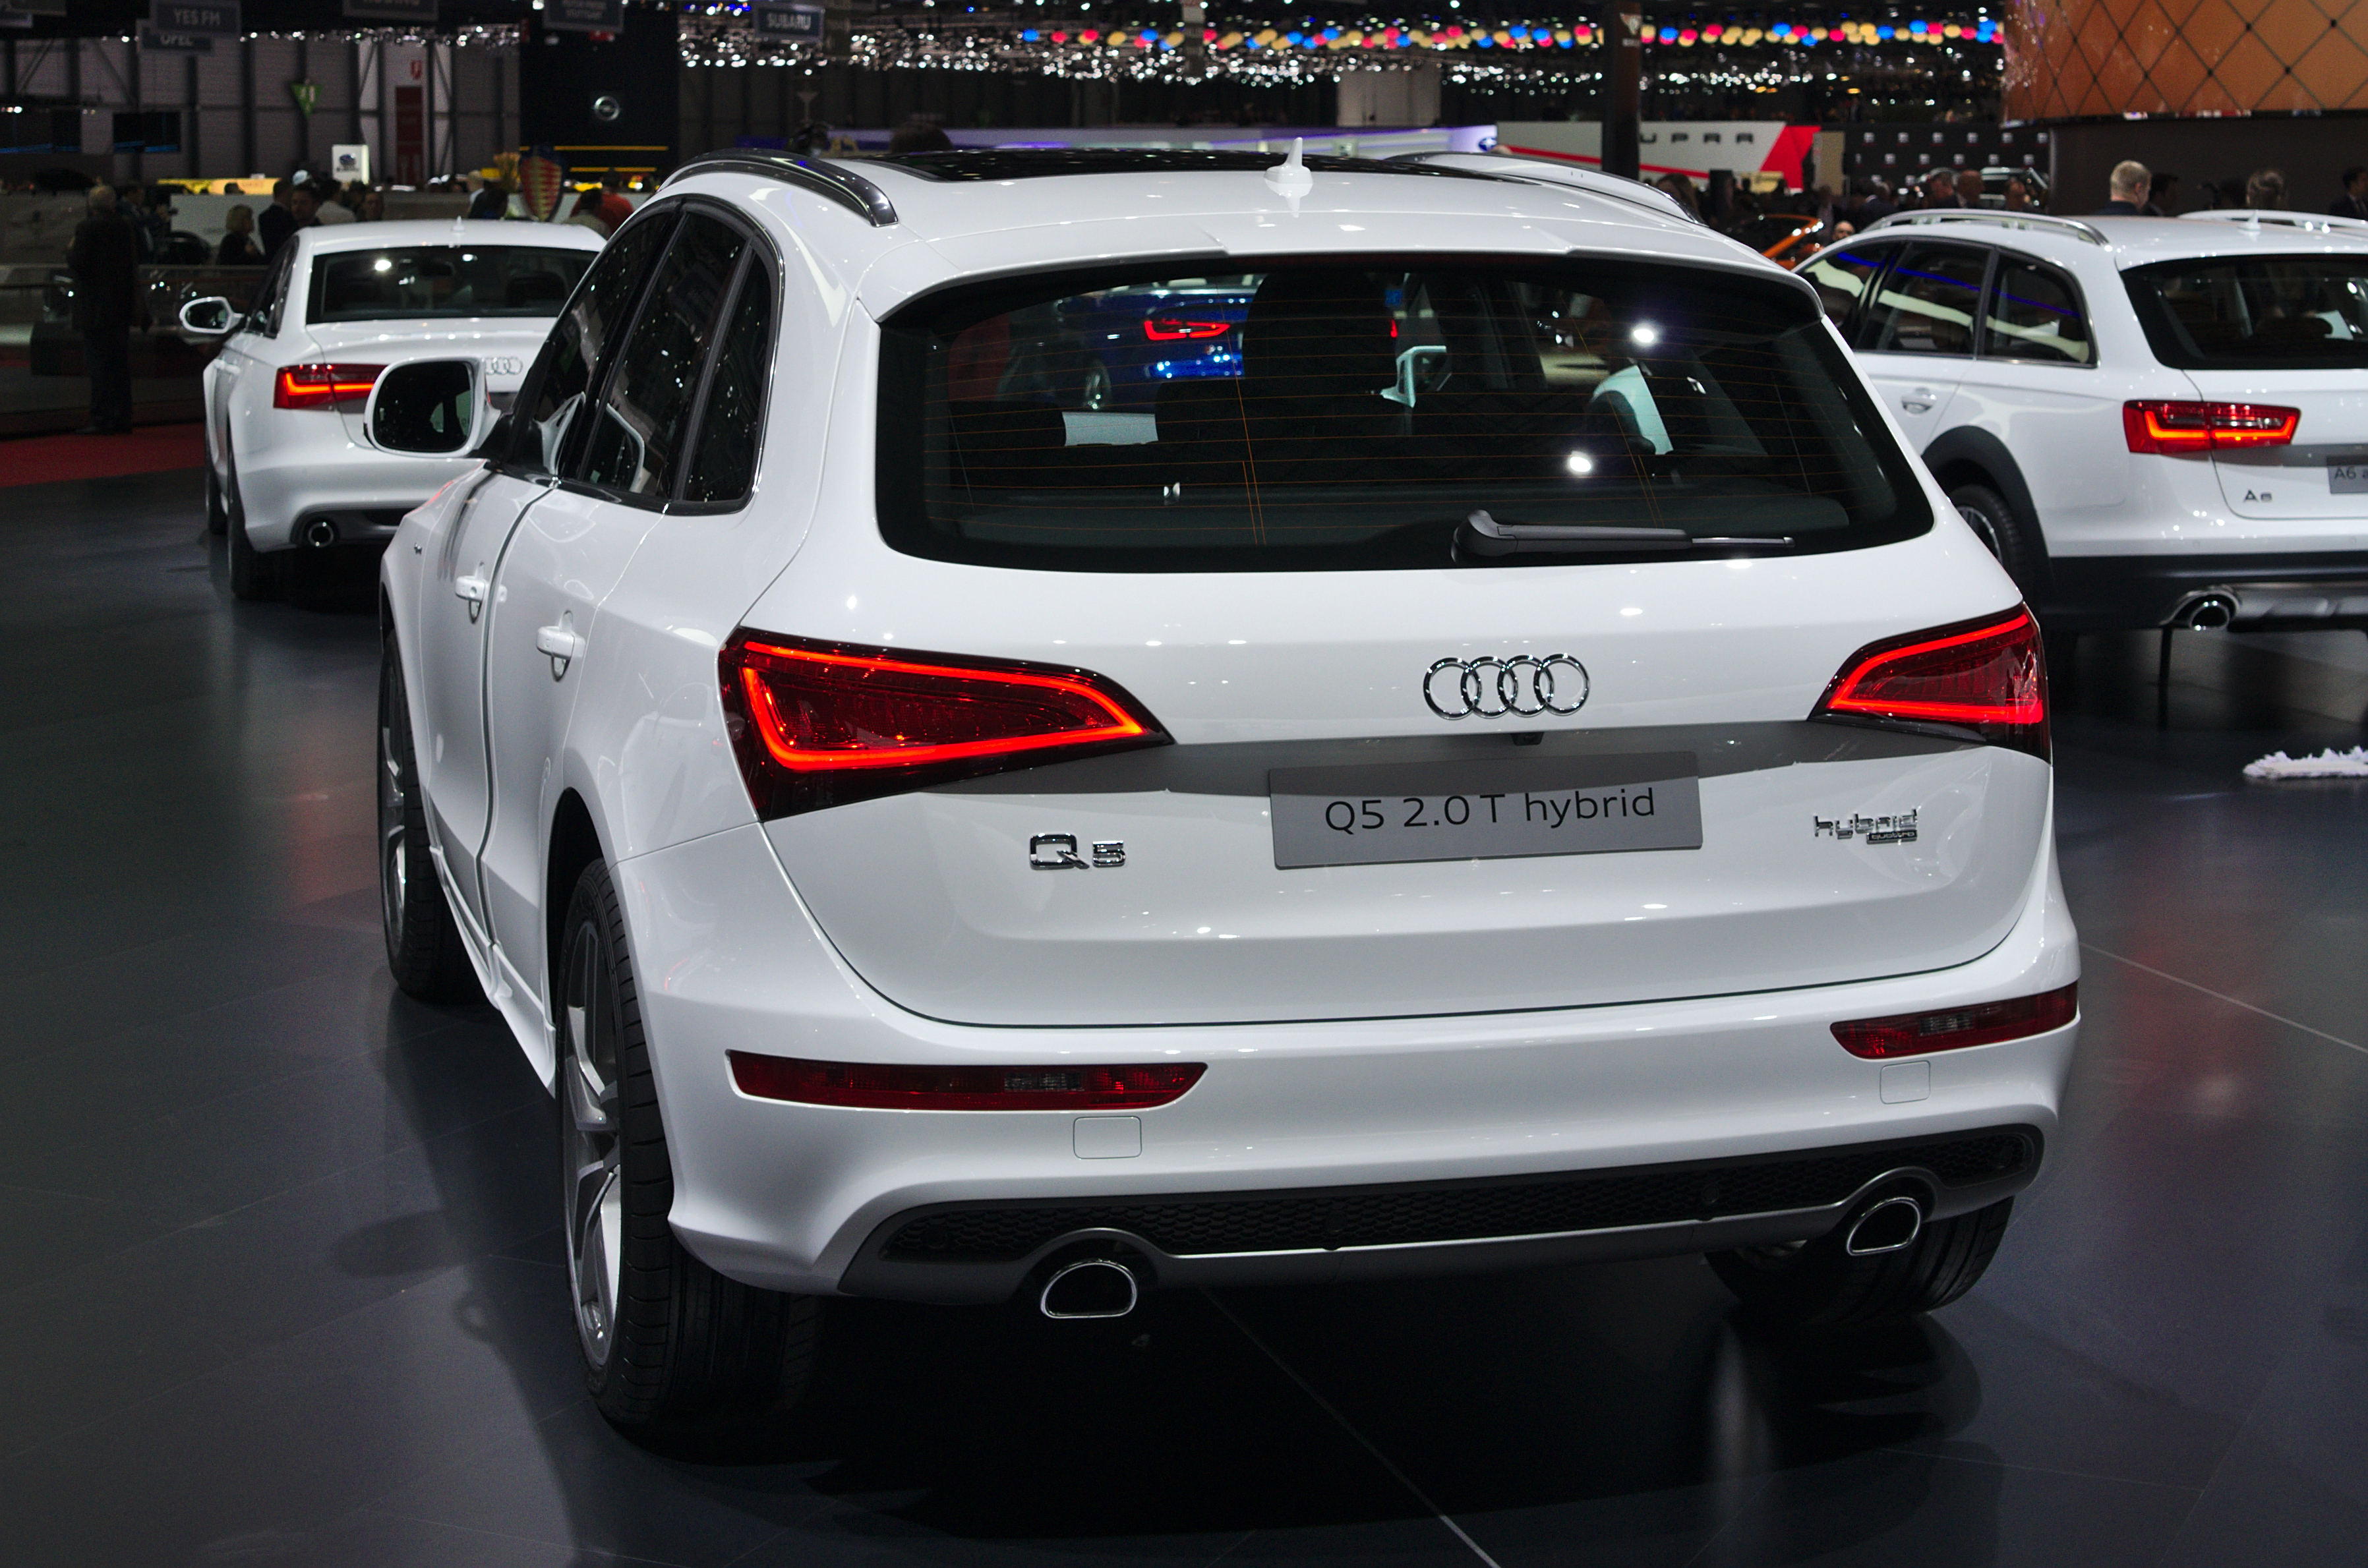 Salon de l'auto de Genève 2014 - 20140305 - Audi Q5 2.5 T hybrid